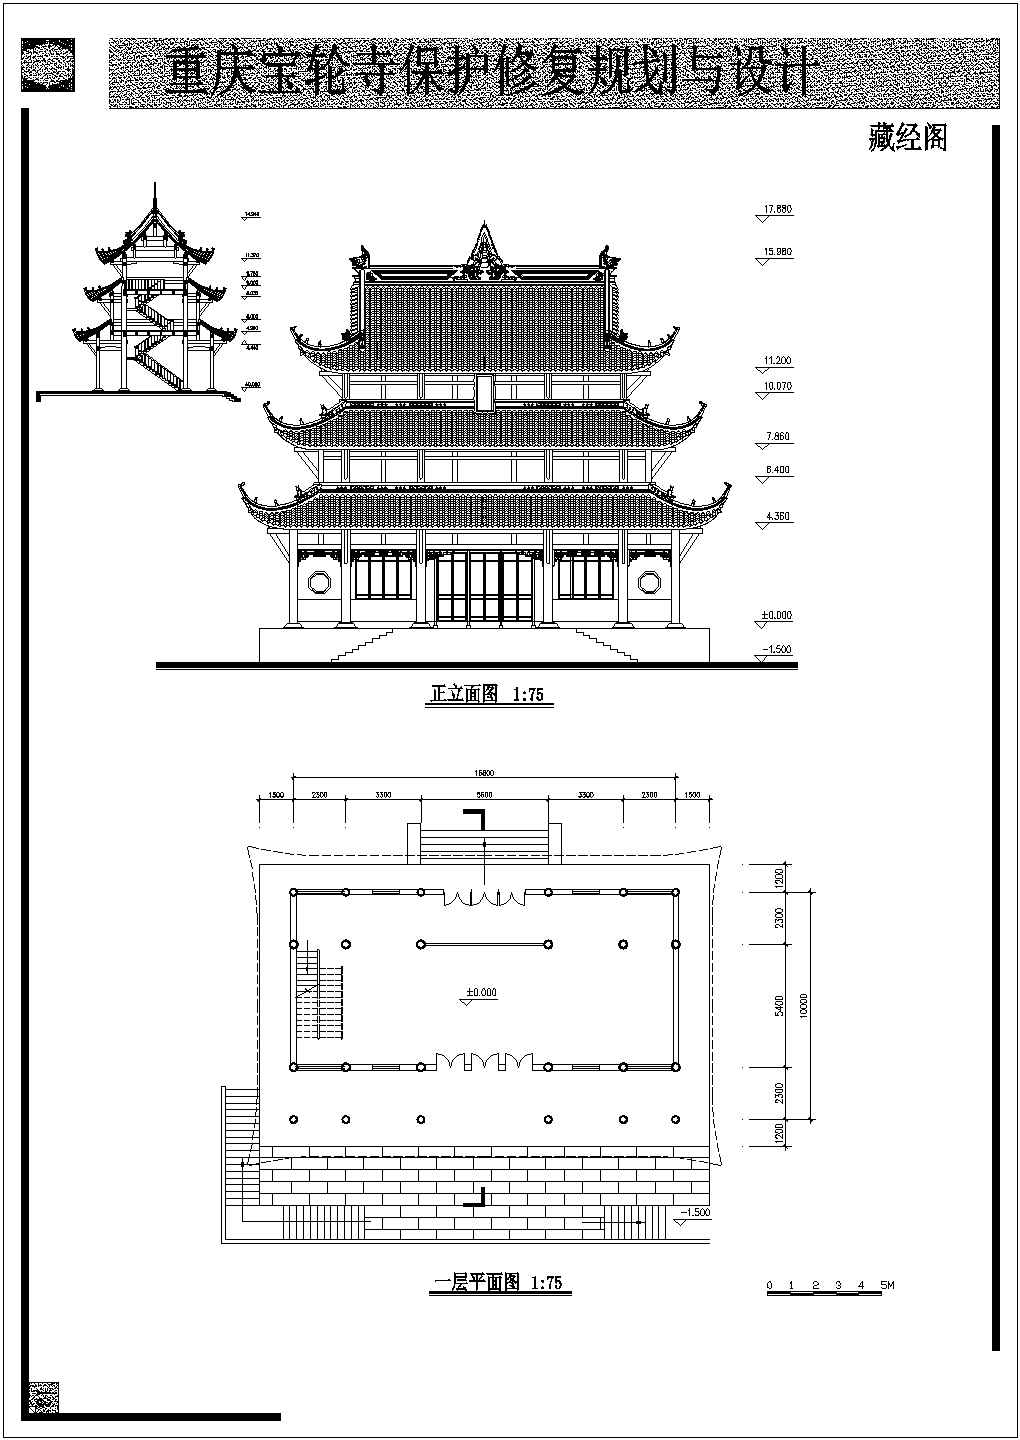 宝轮寺庙建筑修复规划与设计详图纸